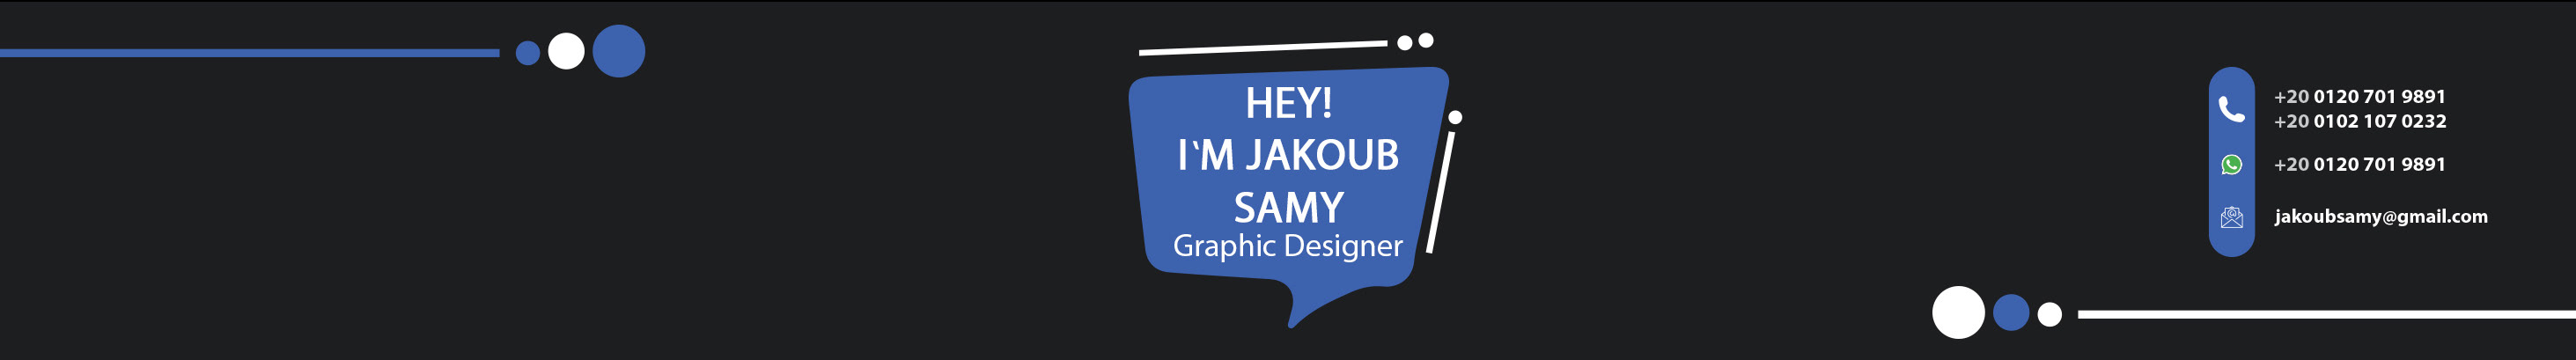 Jakoub Samy のプロファイルバナー